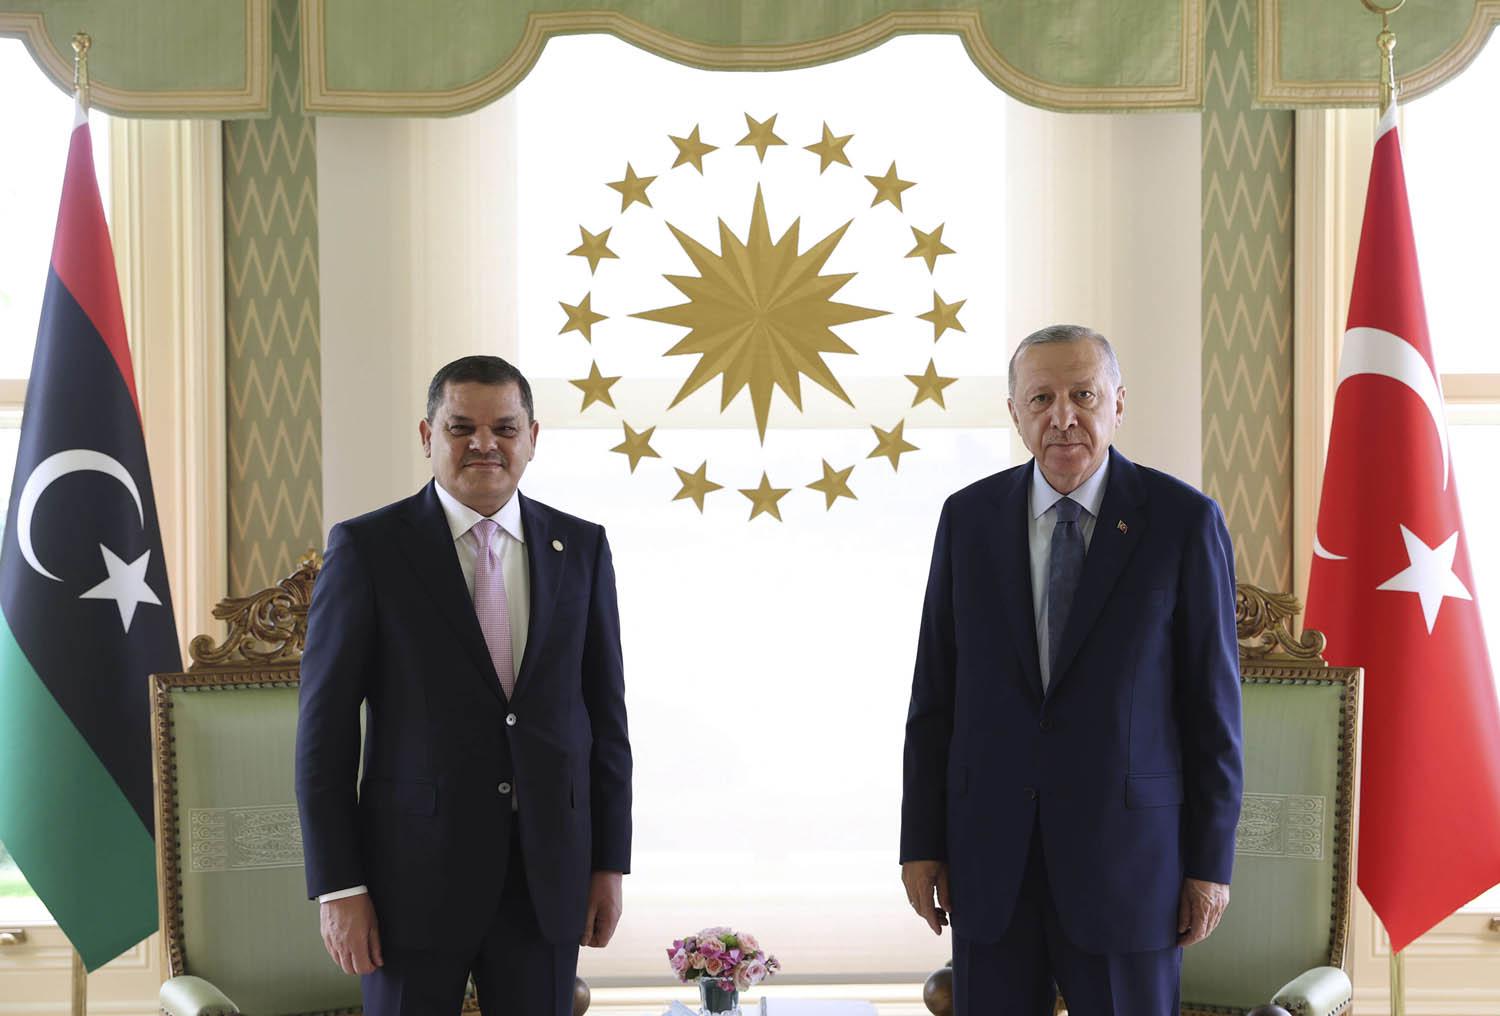 الرئيس التركي رجب طيب اردوغان يستقبل رئيس الحكومة الليبية عبدالحميد دبيبة في اسطنبول